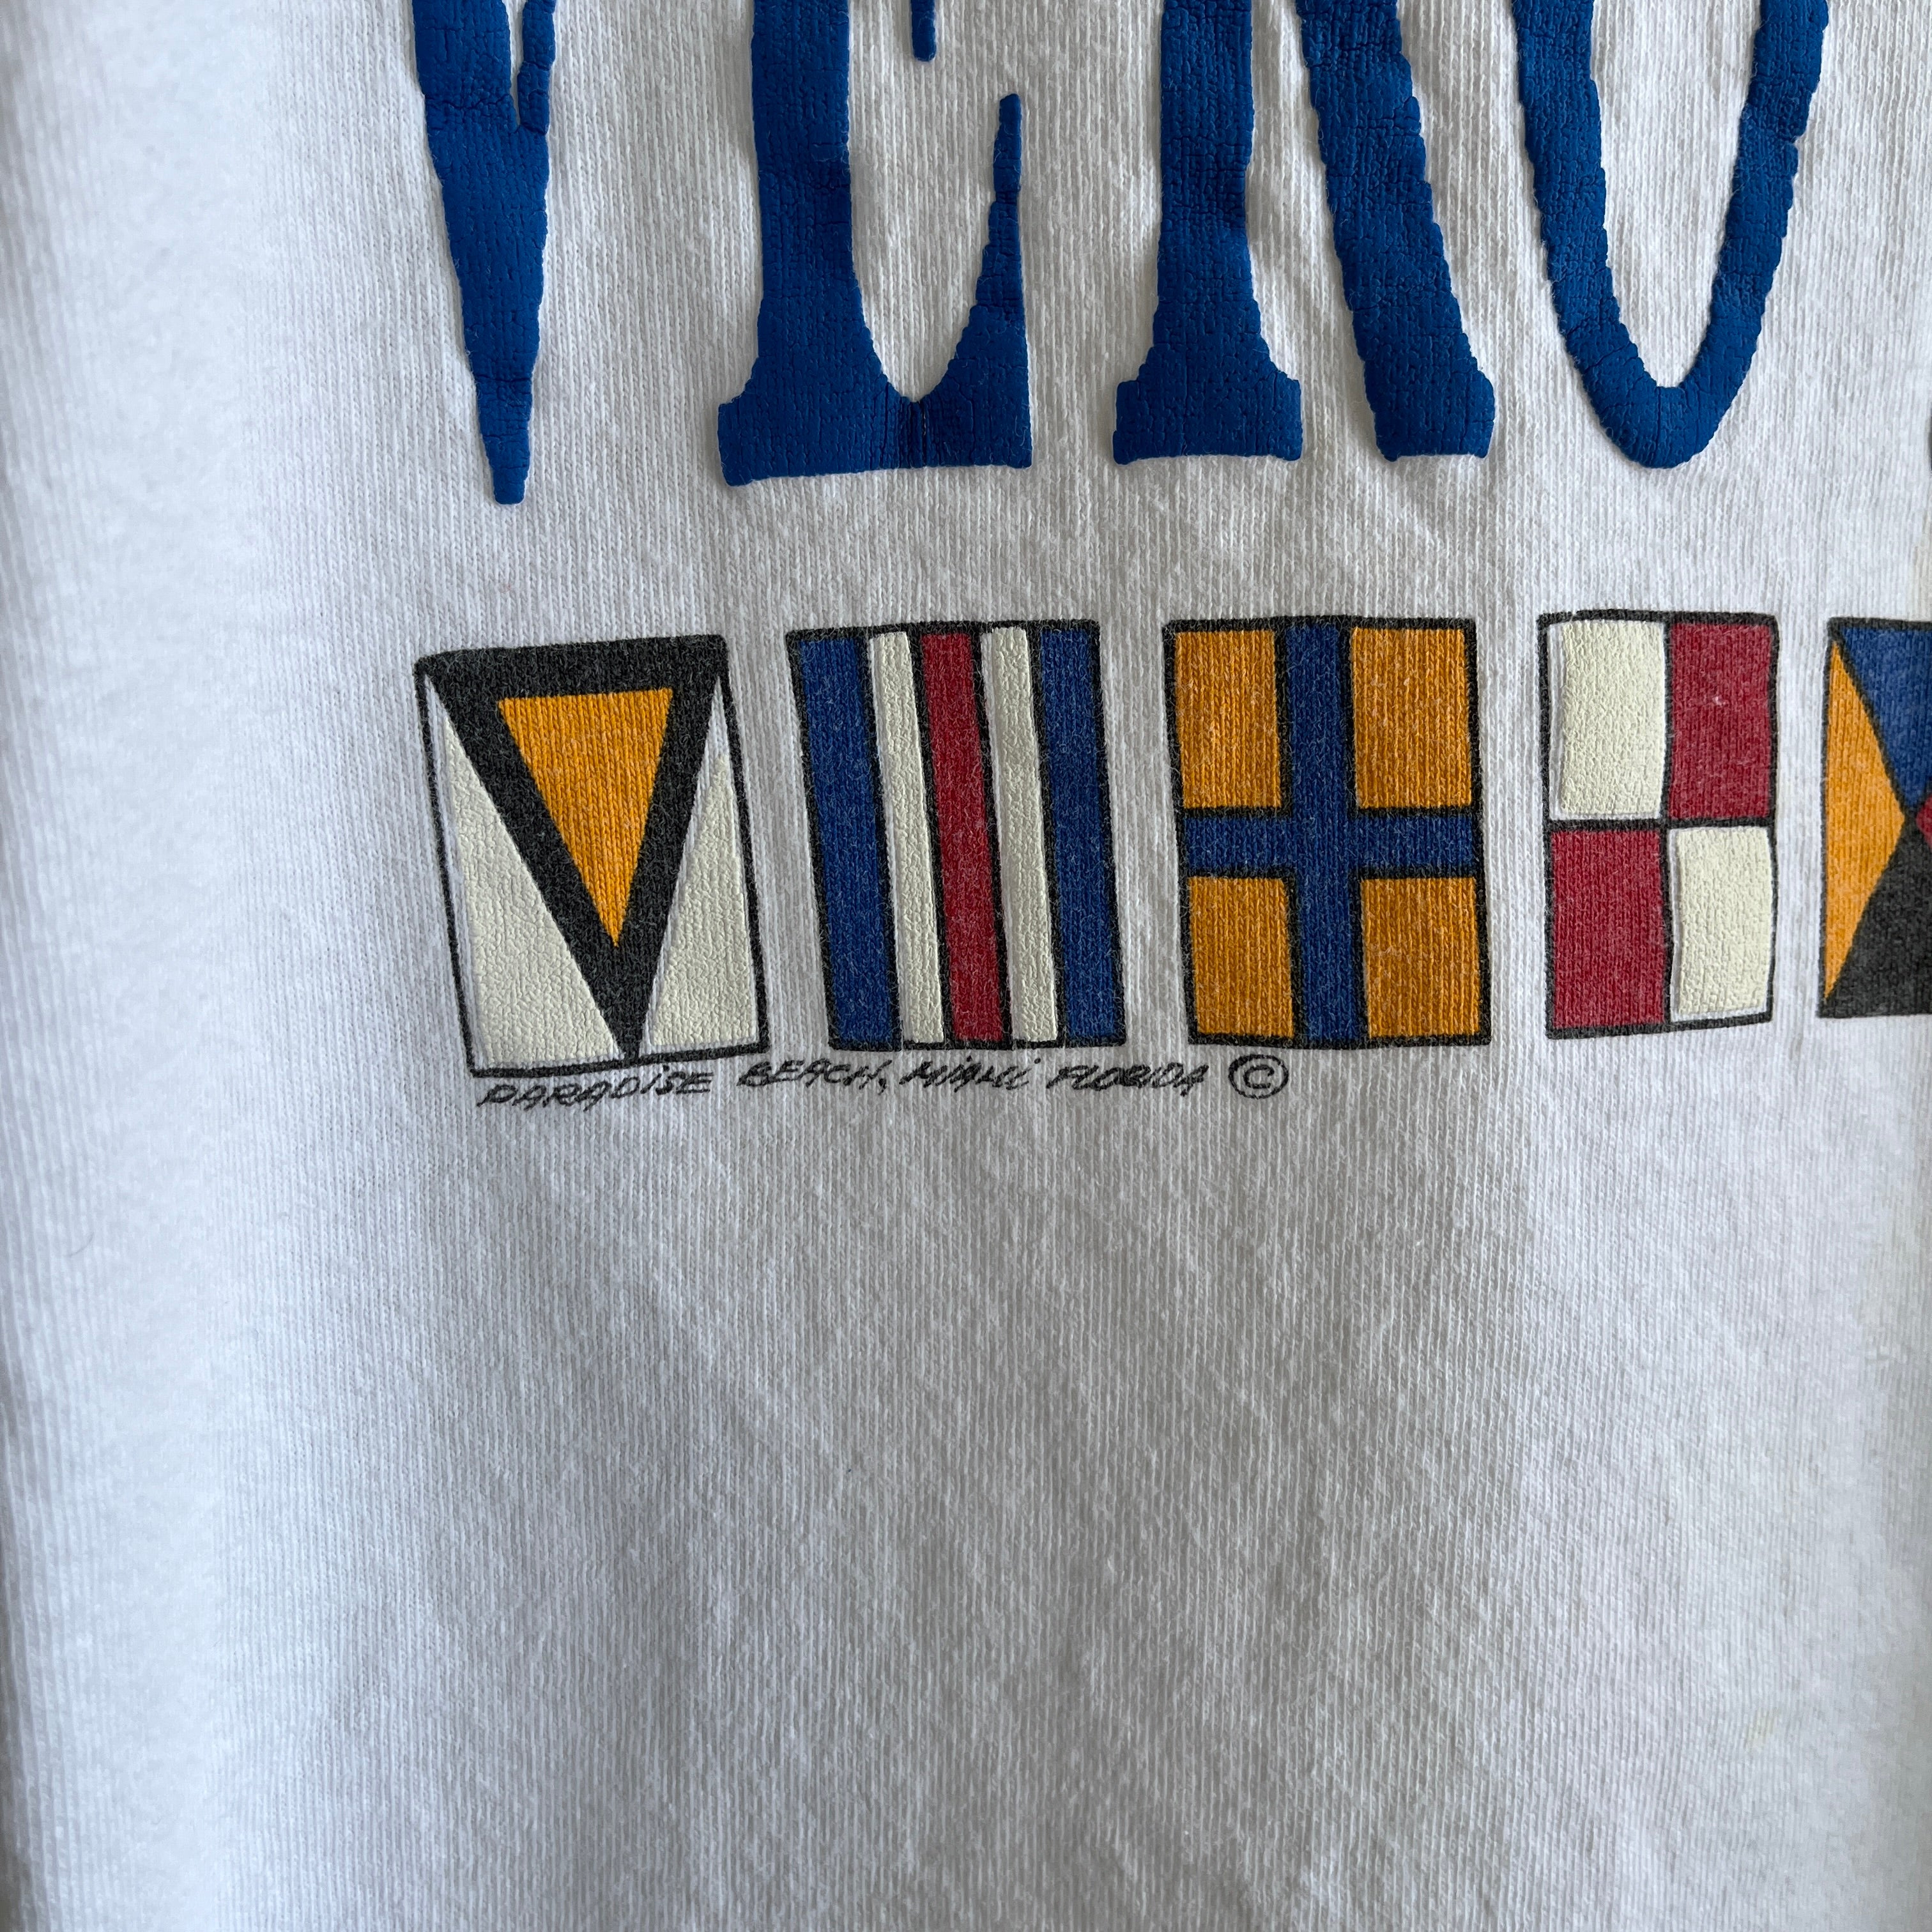 1980s Vero Beach Tourist T-Shirt by FOTL